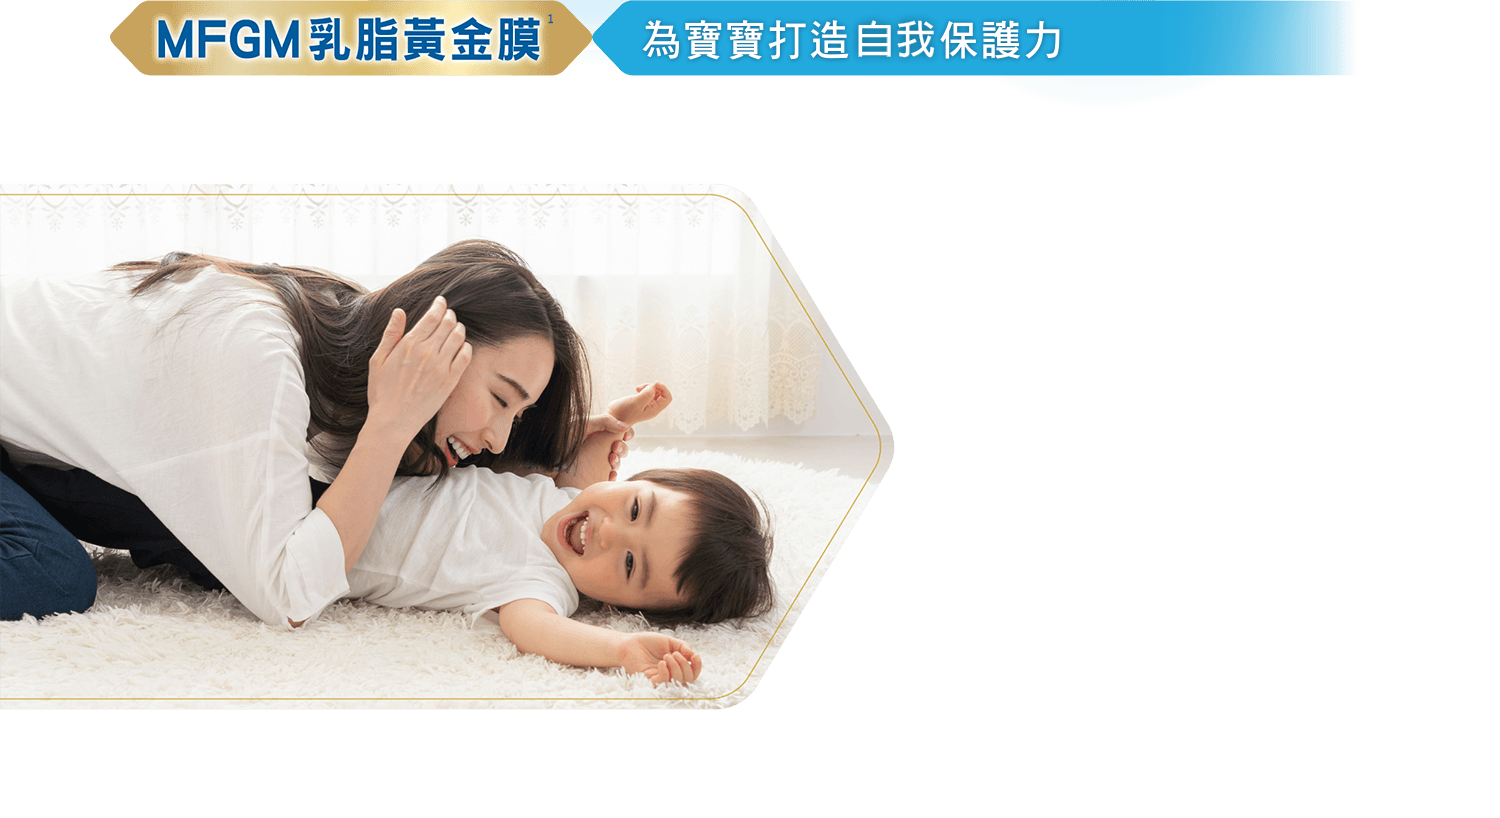 MFGM乳脂黃金膜 為寶寶打造母愛級保護力